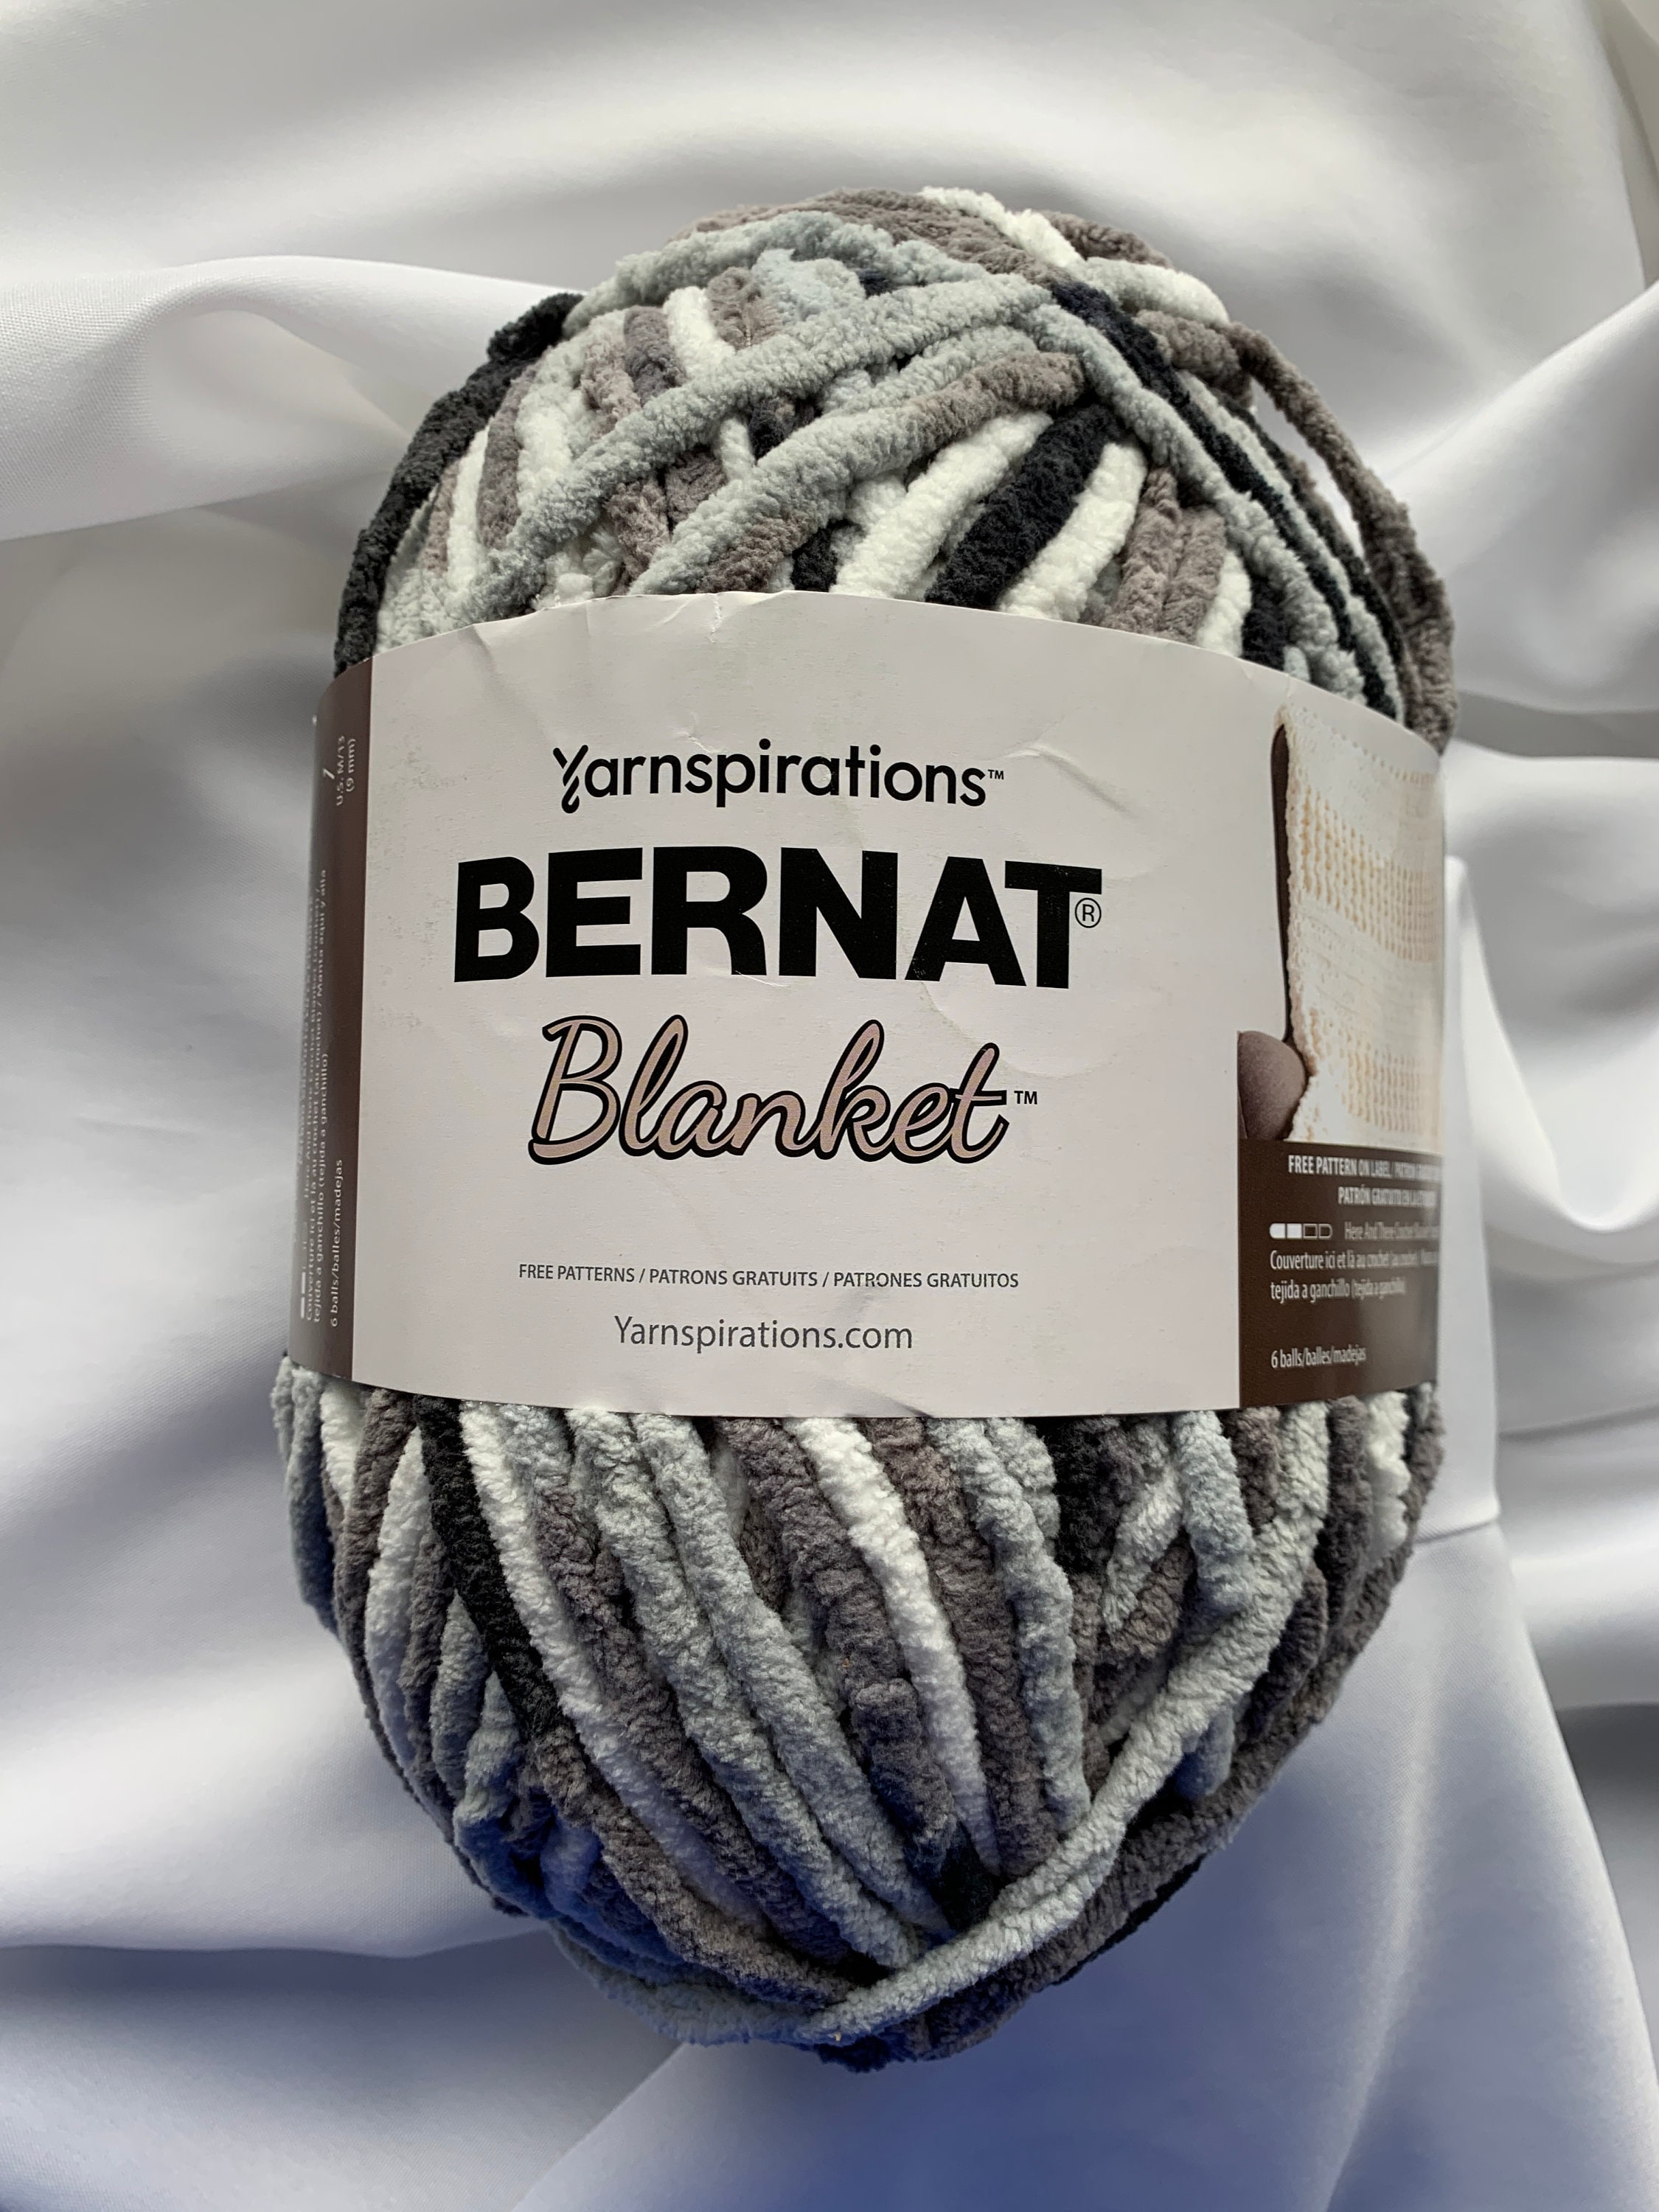 Bernat Maker Home Dec Retro Varg Yarn - 2 Pack of 250g/8.8oz - Cotton - 5  Bulky - 317 Yards - Knitting/Crochet 